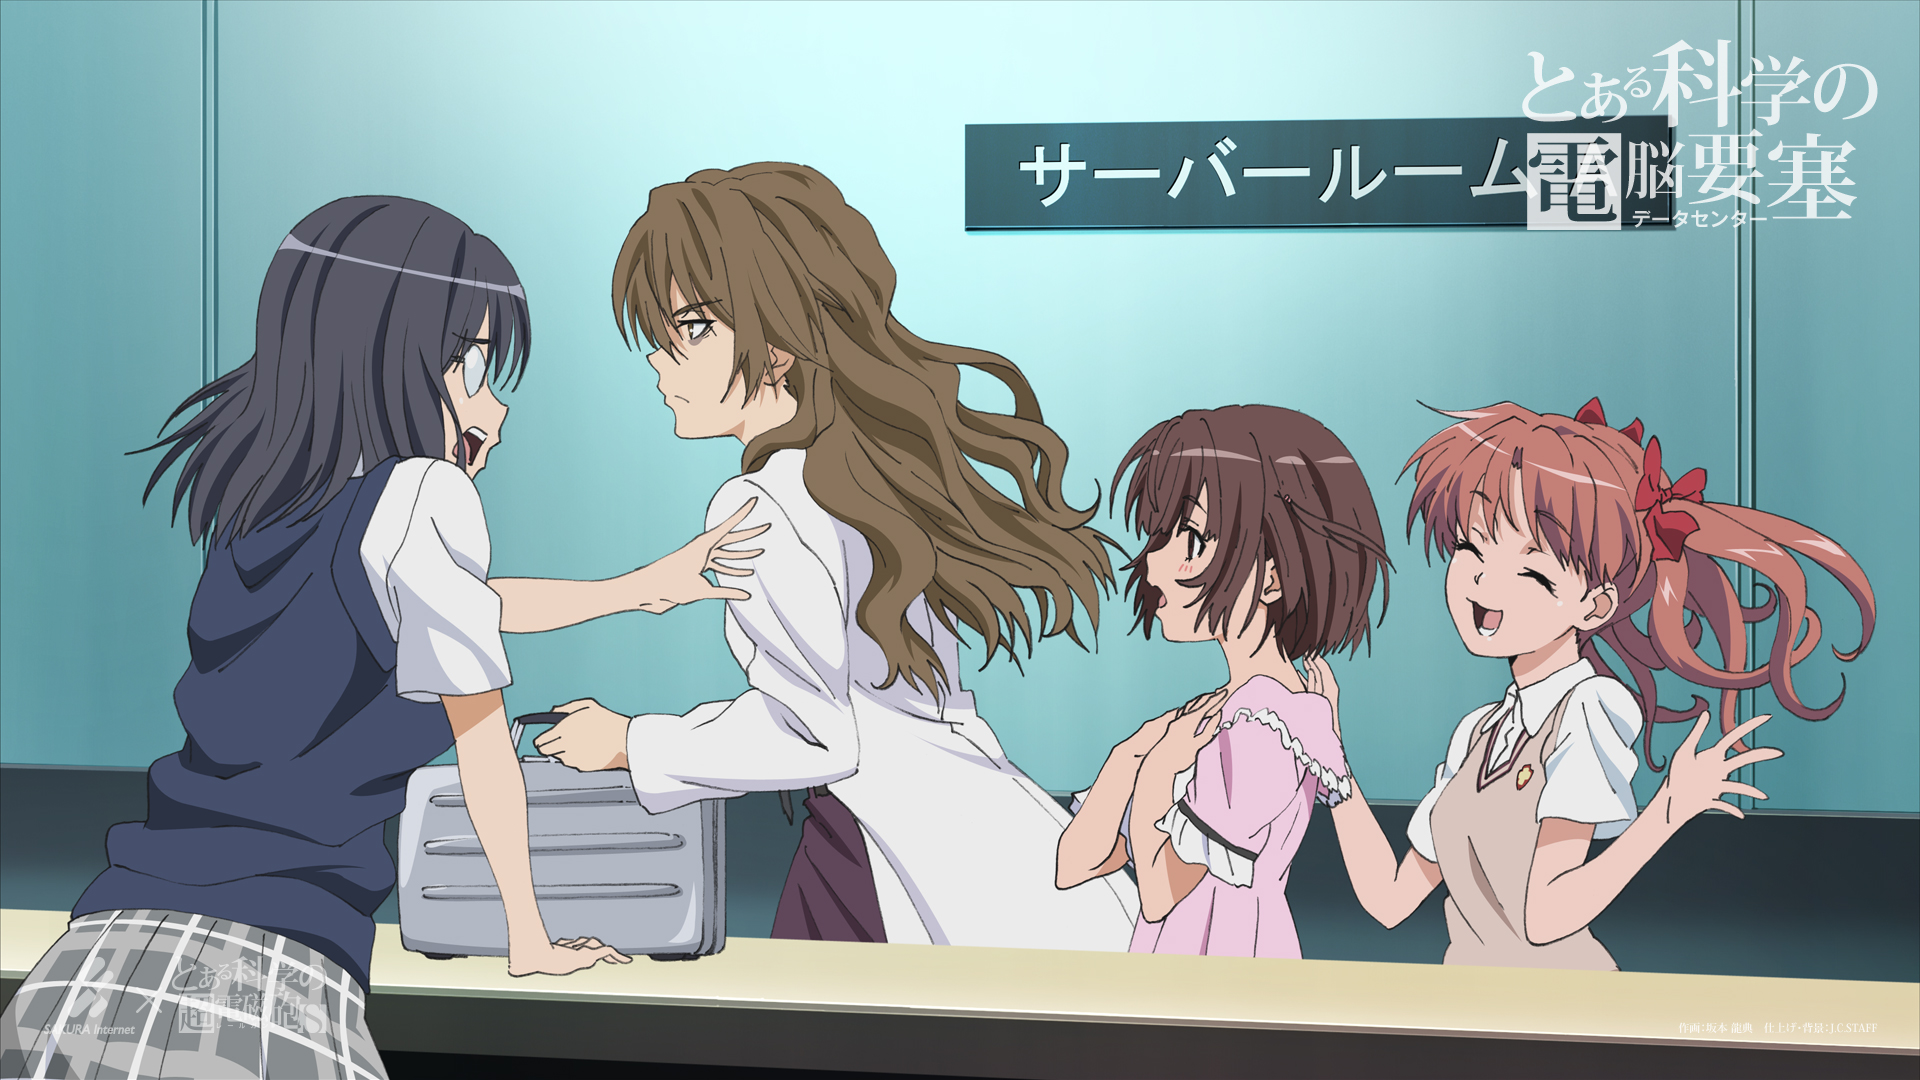 Anime A Certain Scientific Railgun HD Wallpaper Background Image. 